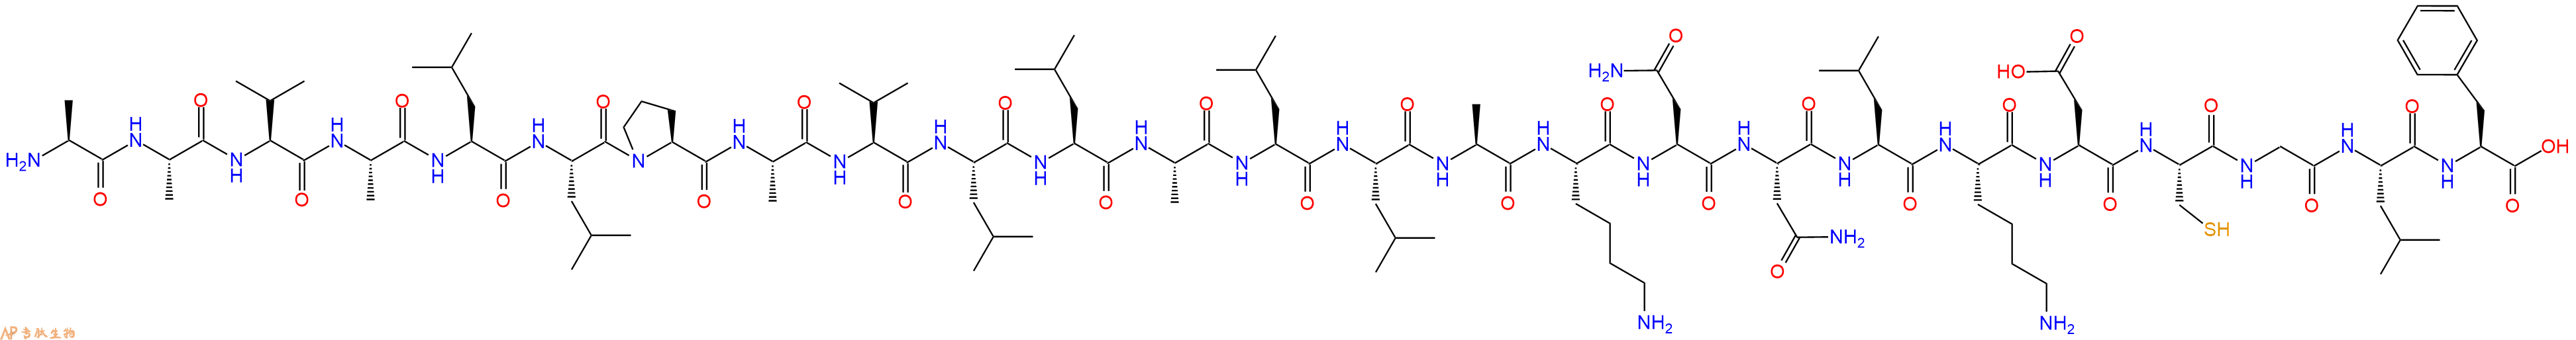 专肽生物产品MPS - Gαi2